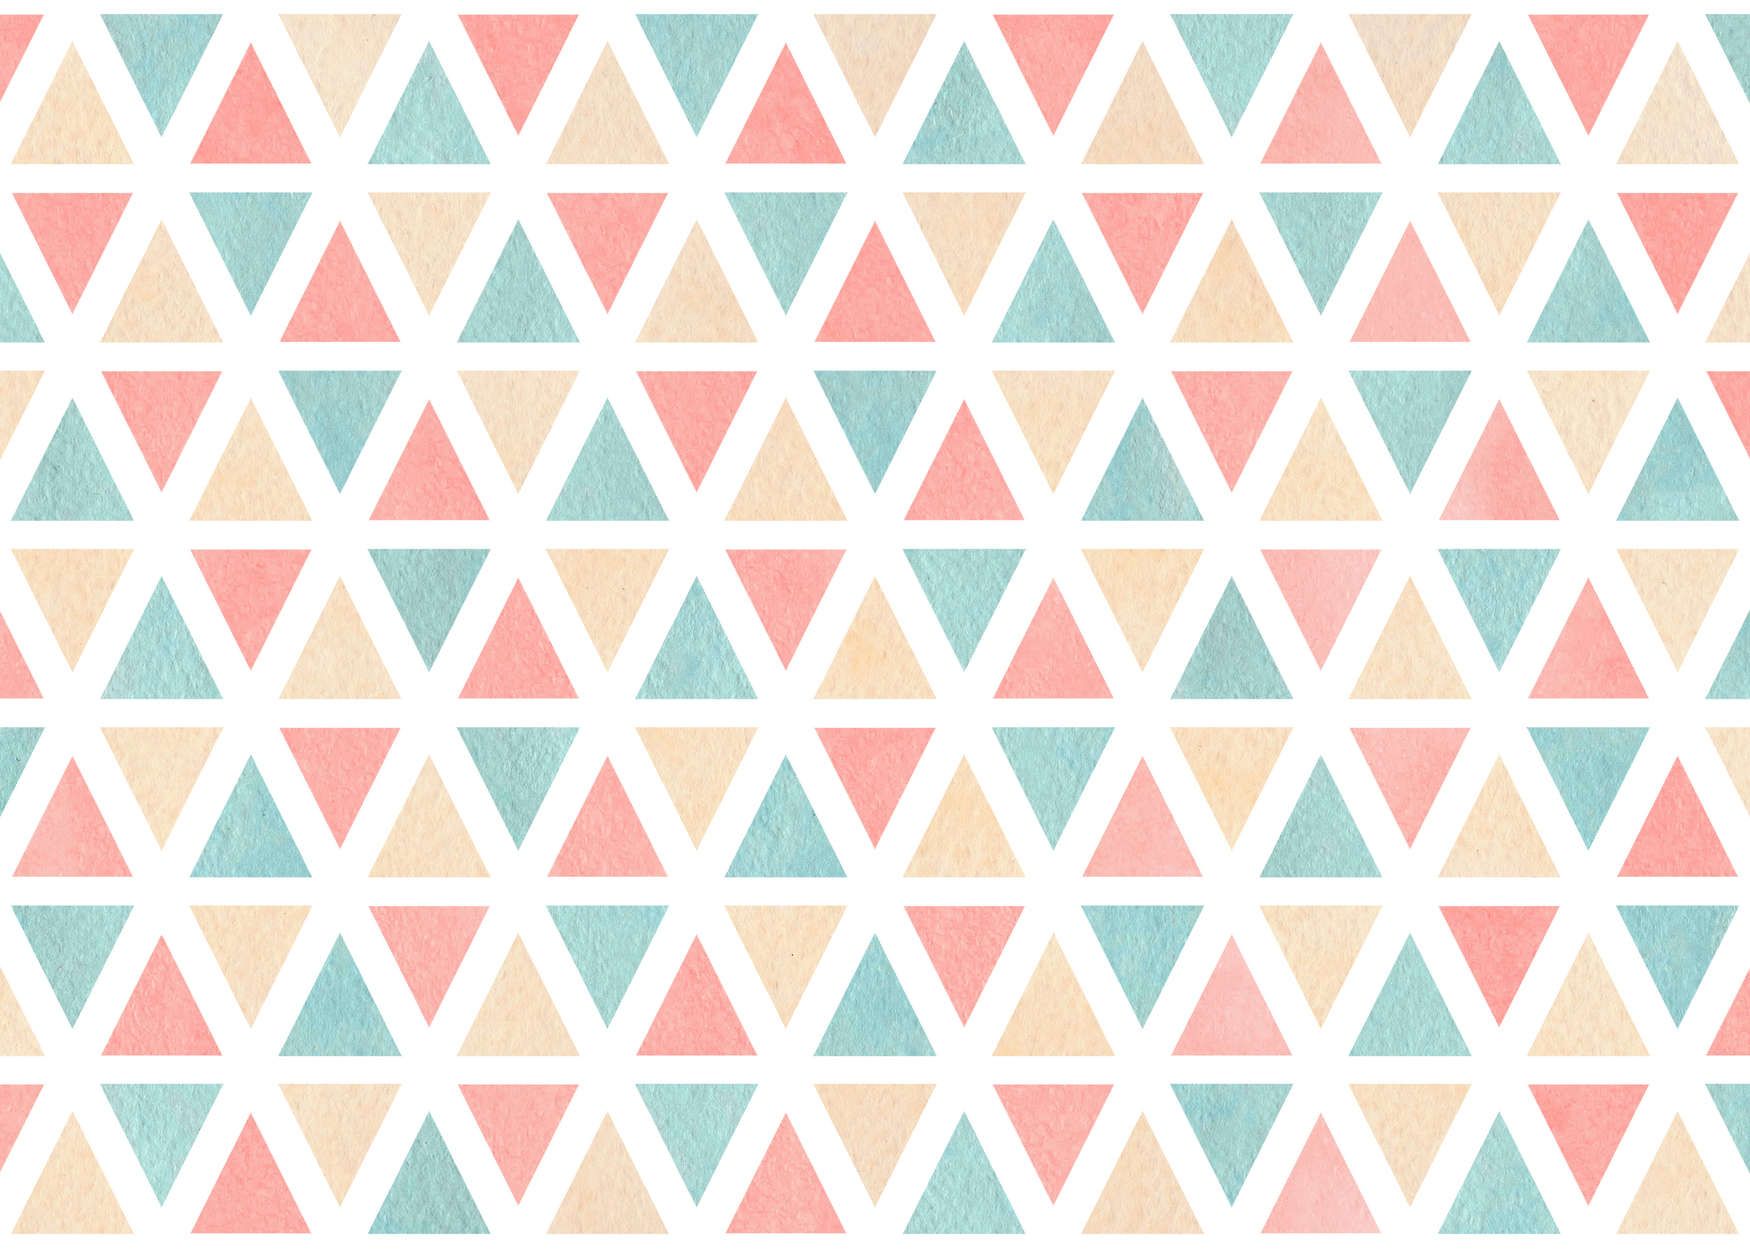             papier peint en papier graphique avec triangles colorés - intissé structuré
        